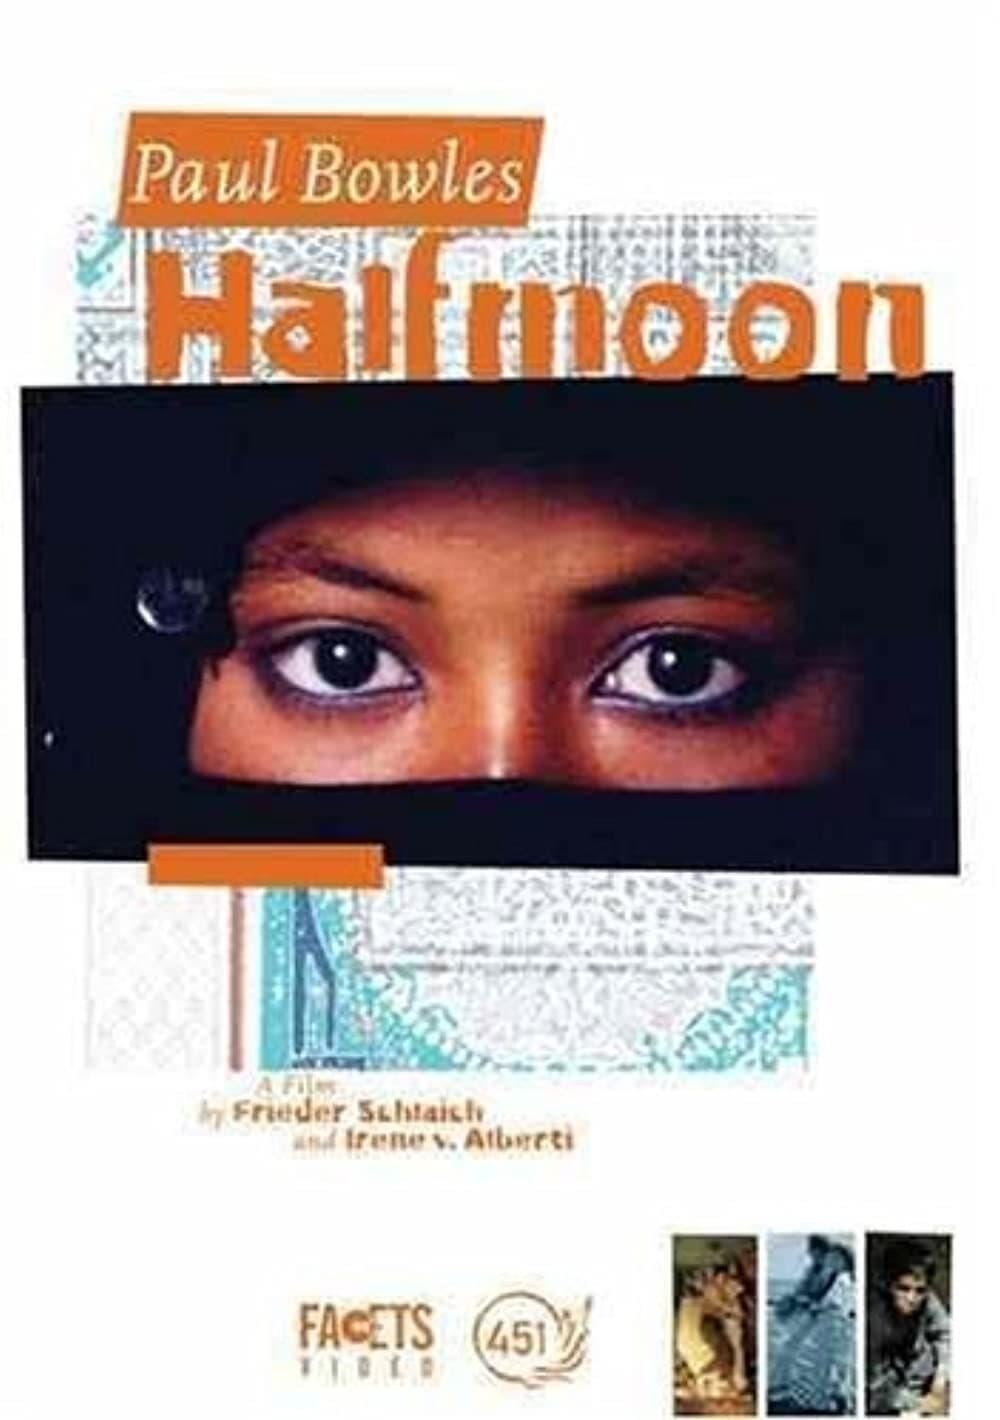 Paul Bowles: Half Moon poster